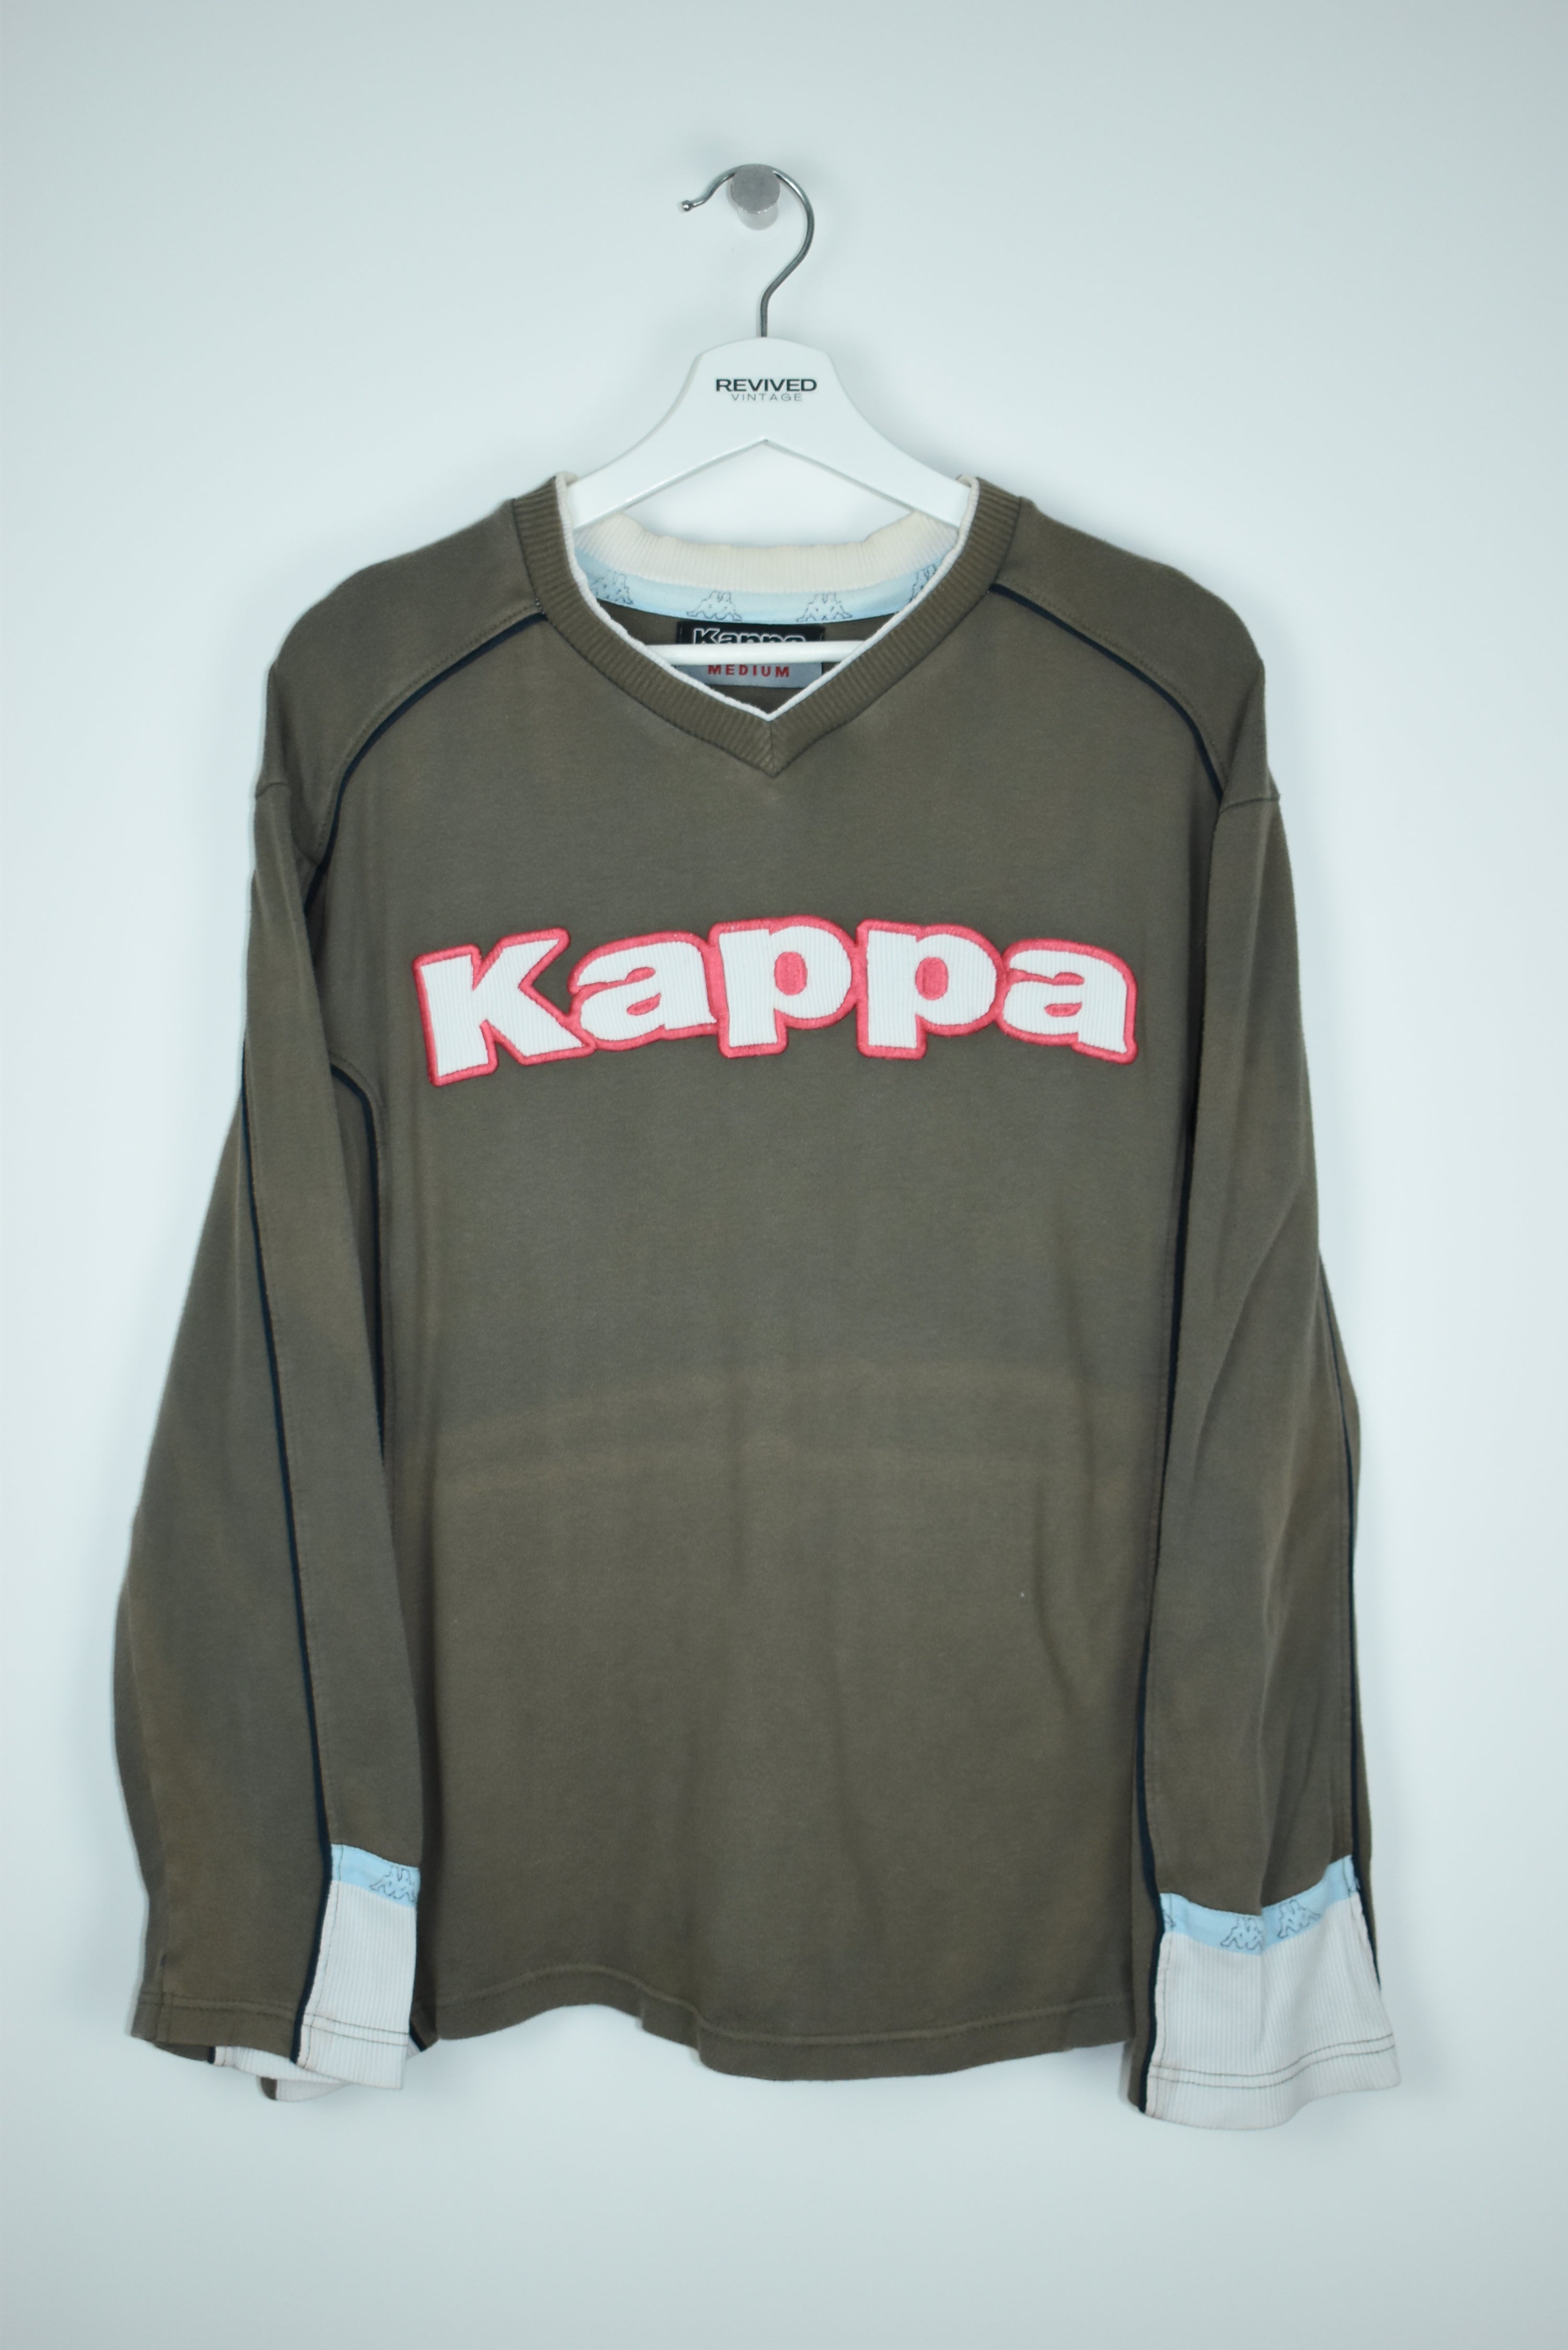 Vintage Kappa Embroidery Spellout Sweatshirt Medium